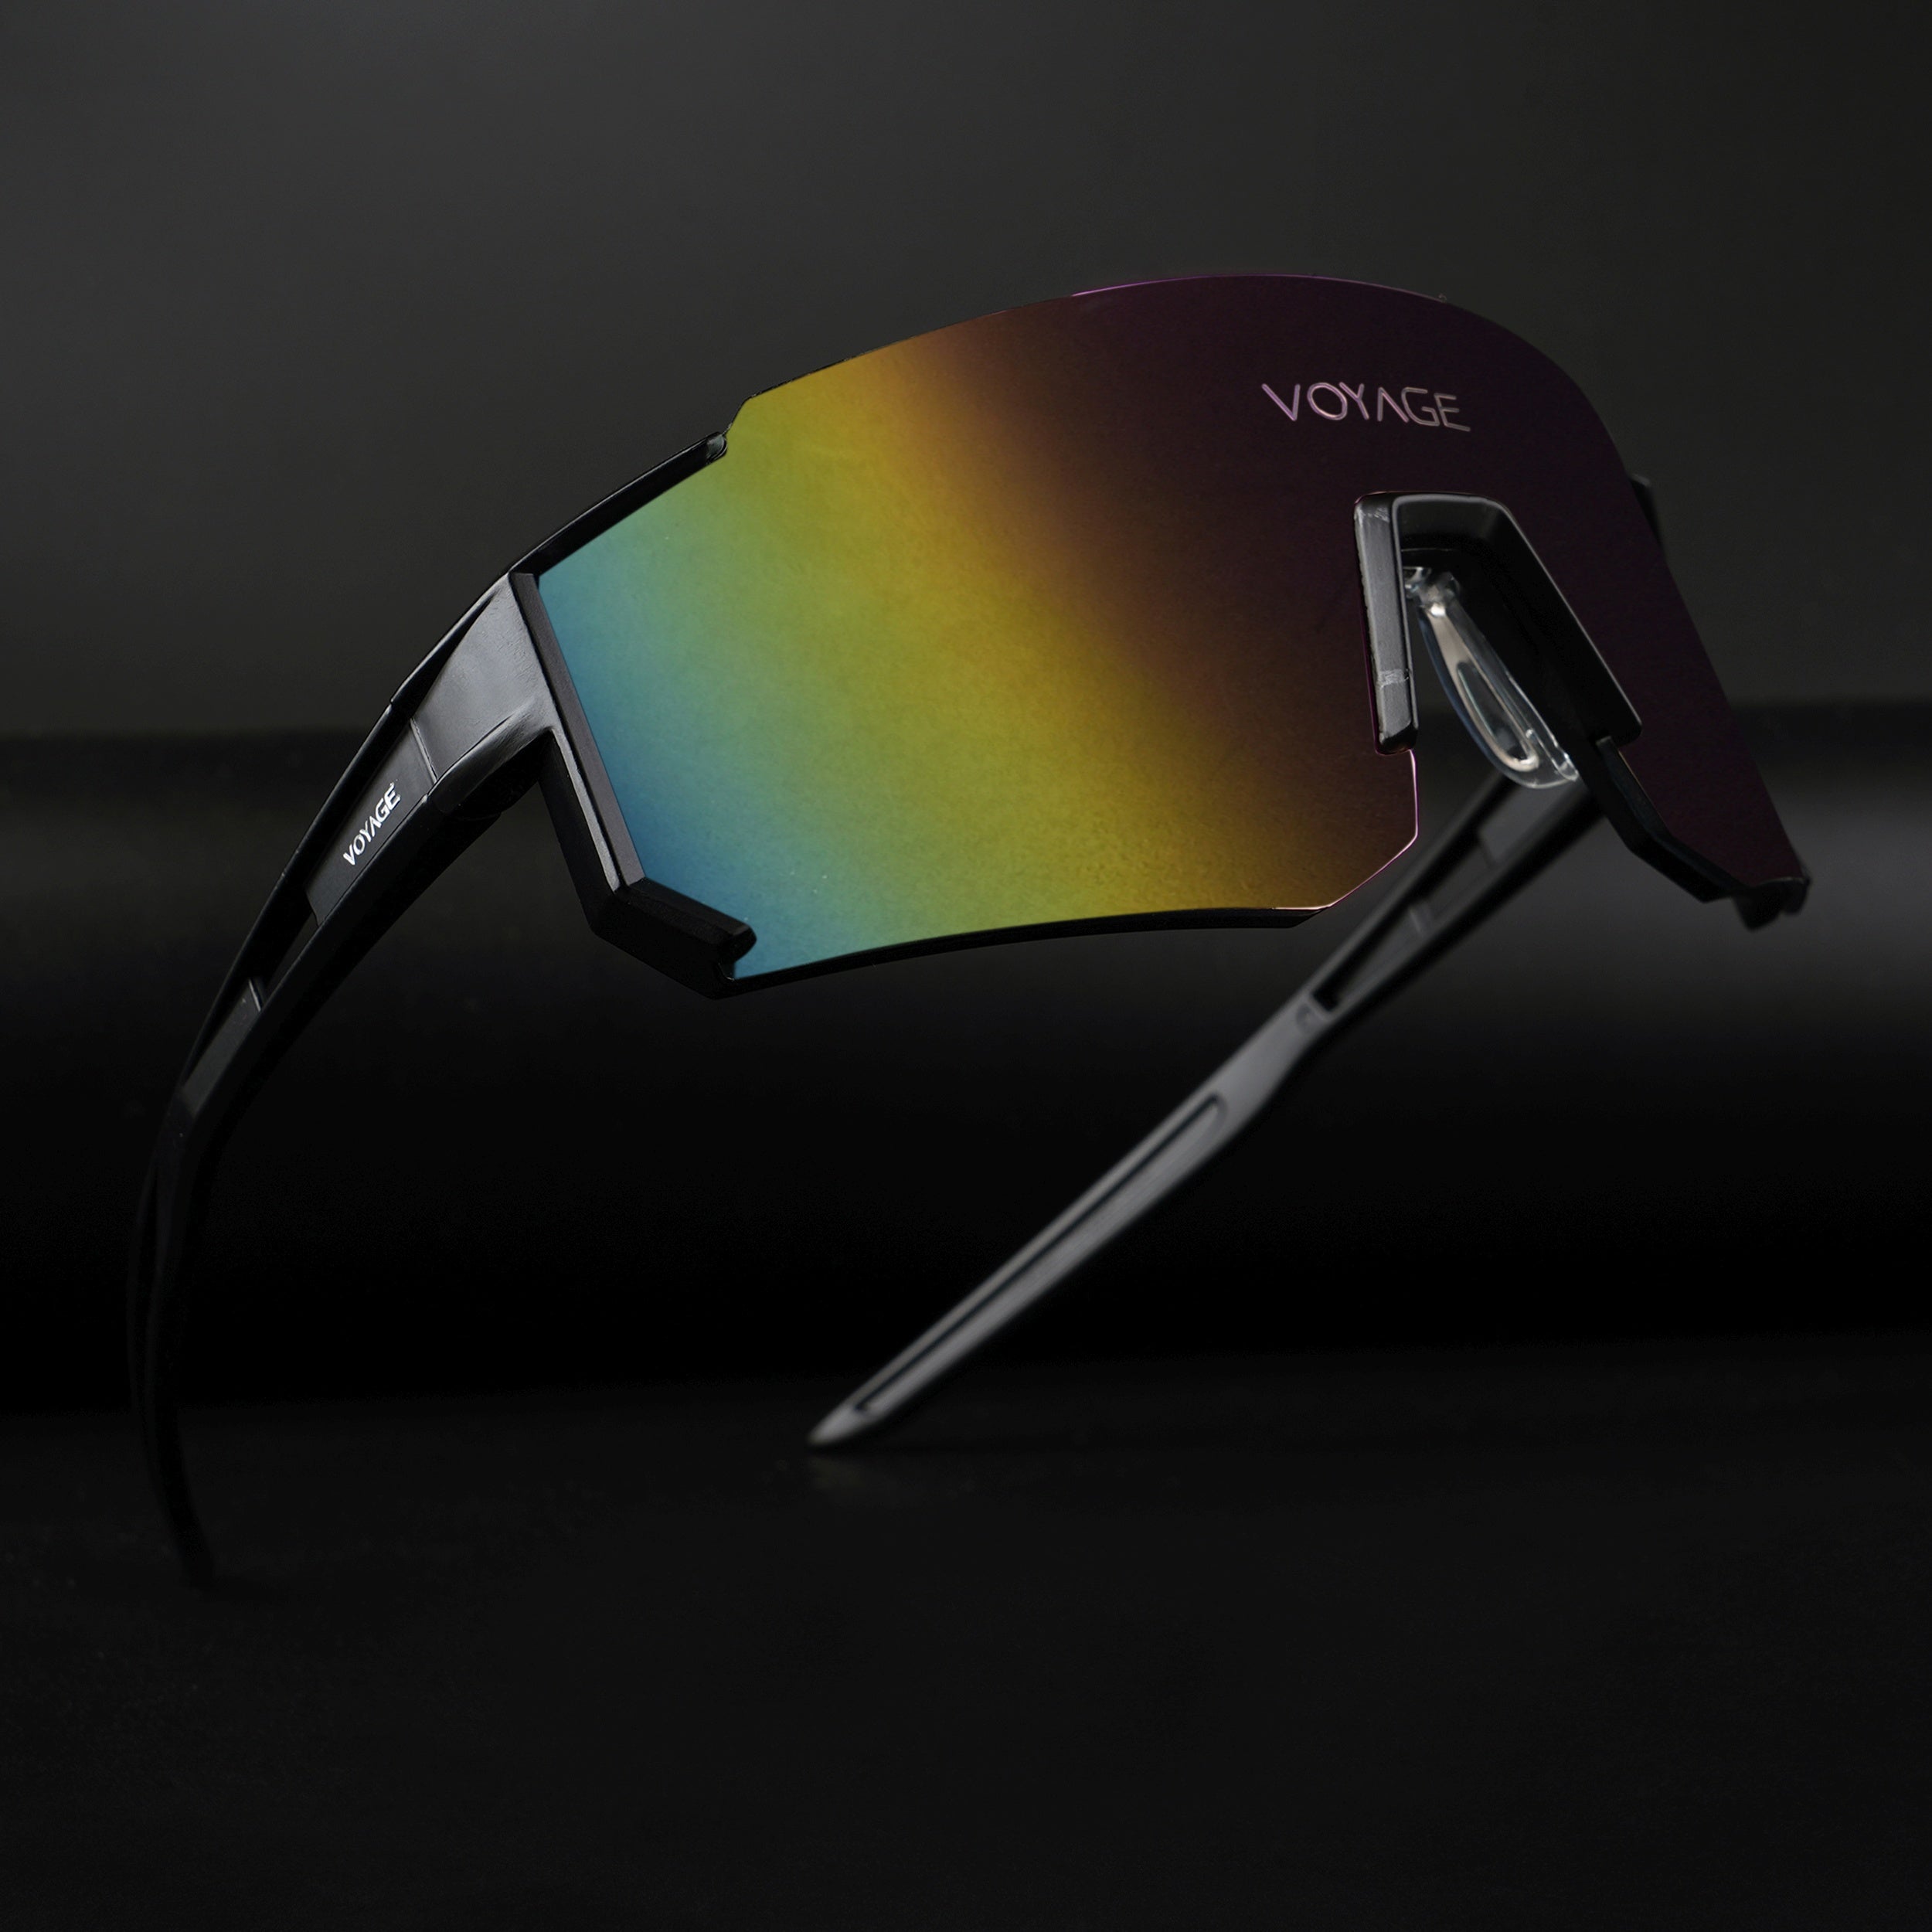 Voyage Drift Sunglasses for Men & Women (Multicolor Lens | Black Frame - MG5625)